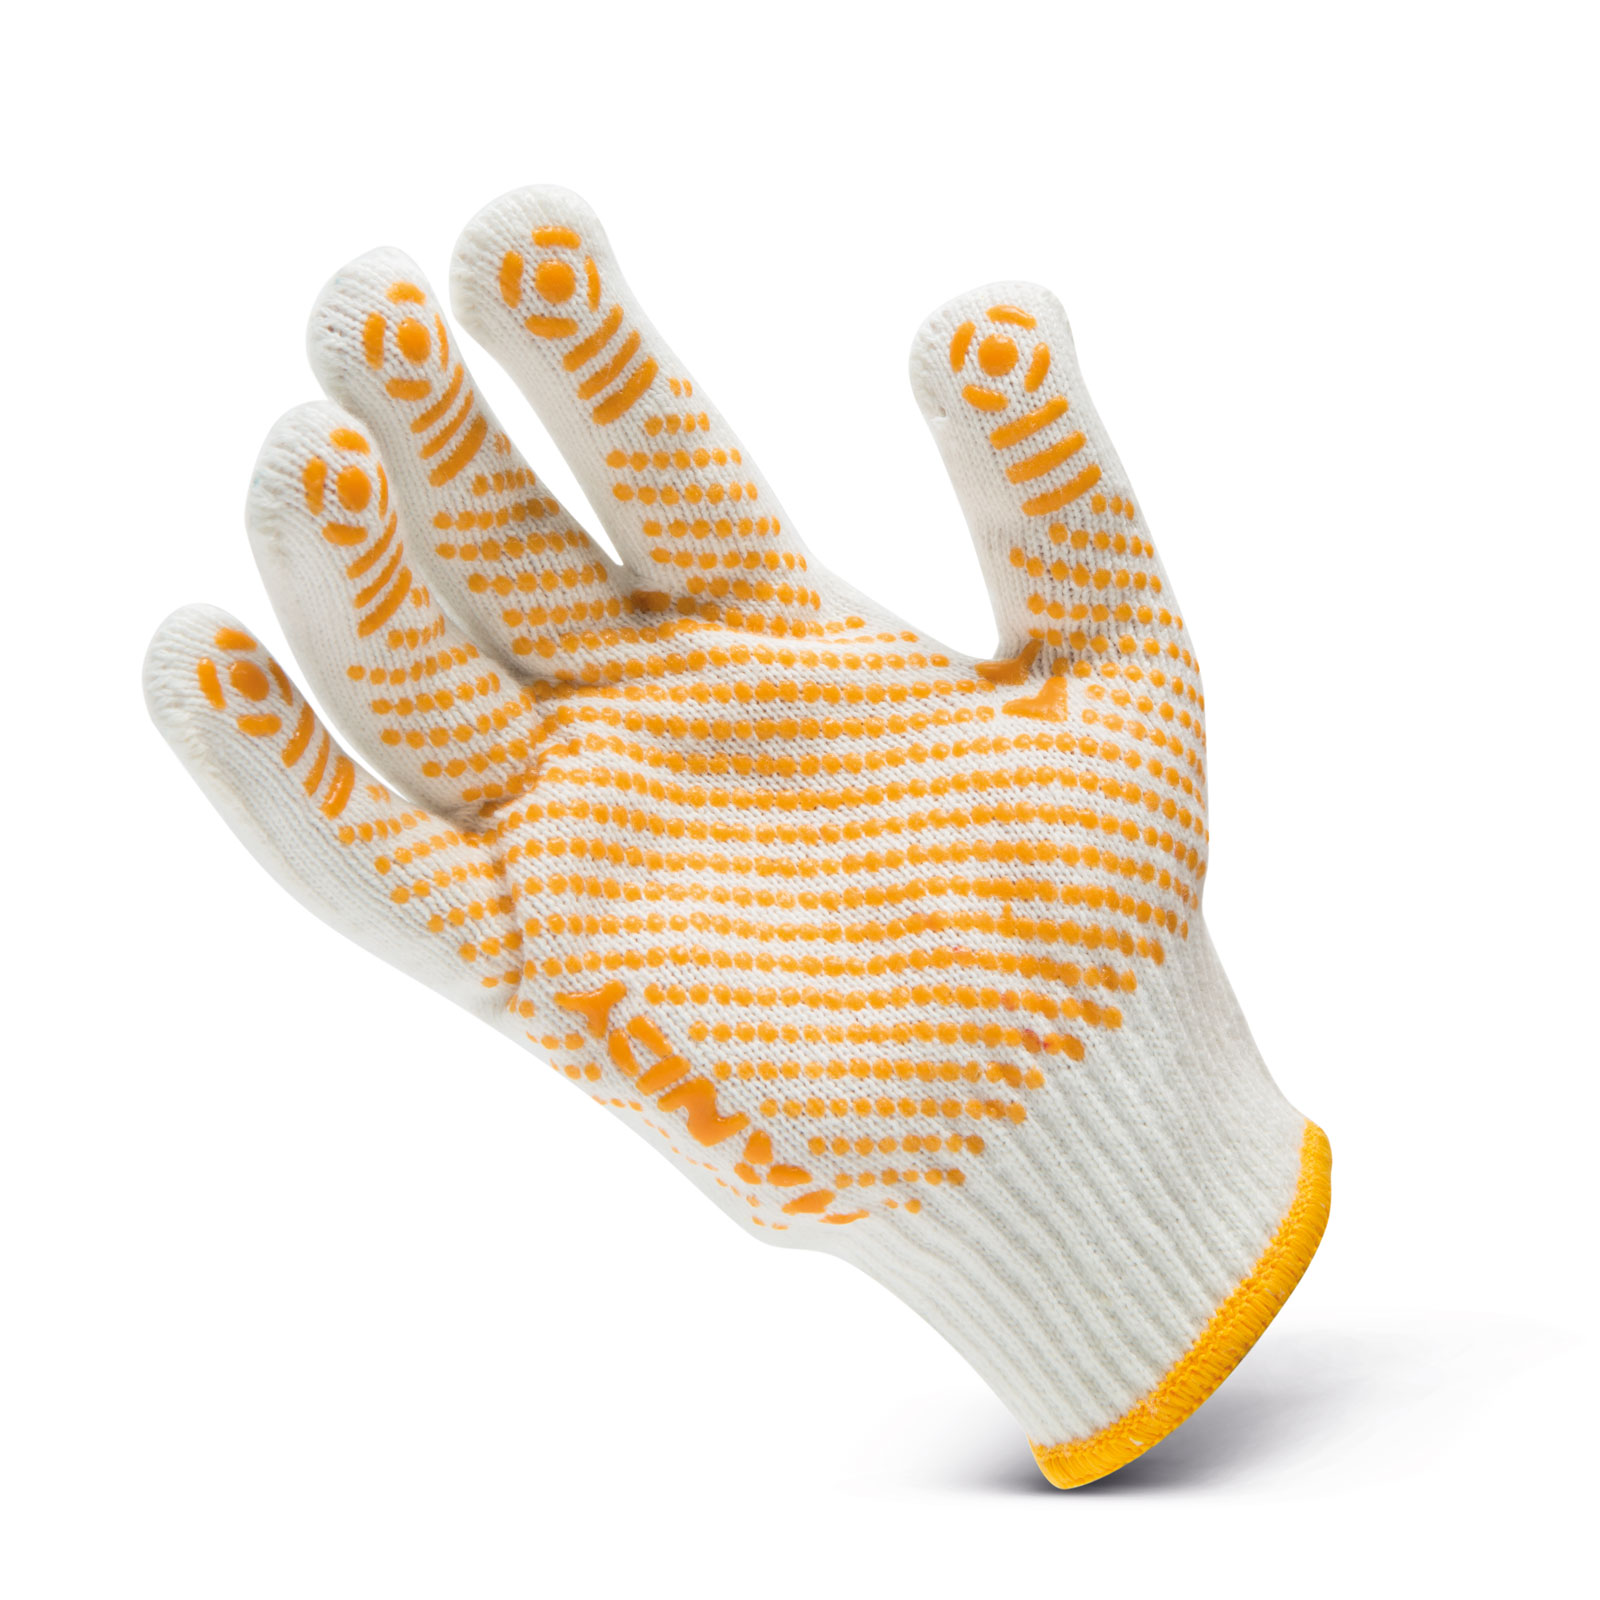 Knitwrist Non-Slip Cotton Gloves thumb